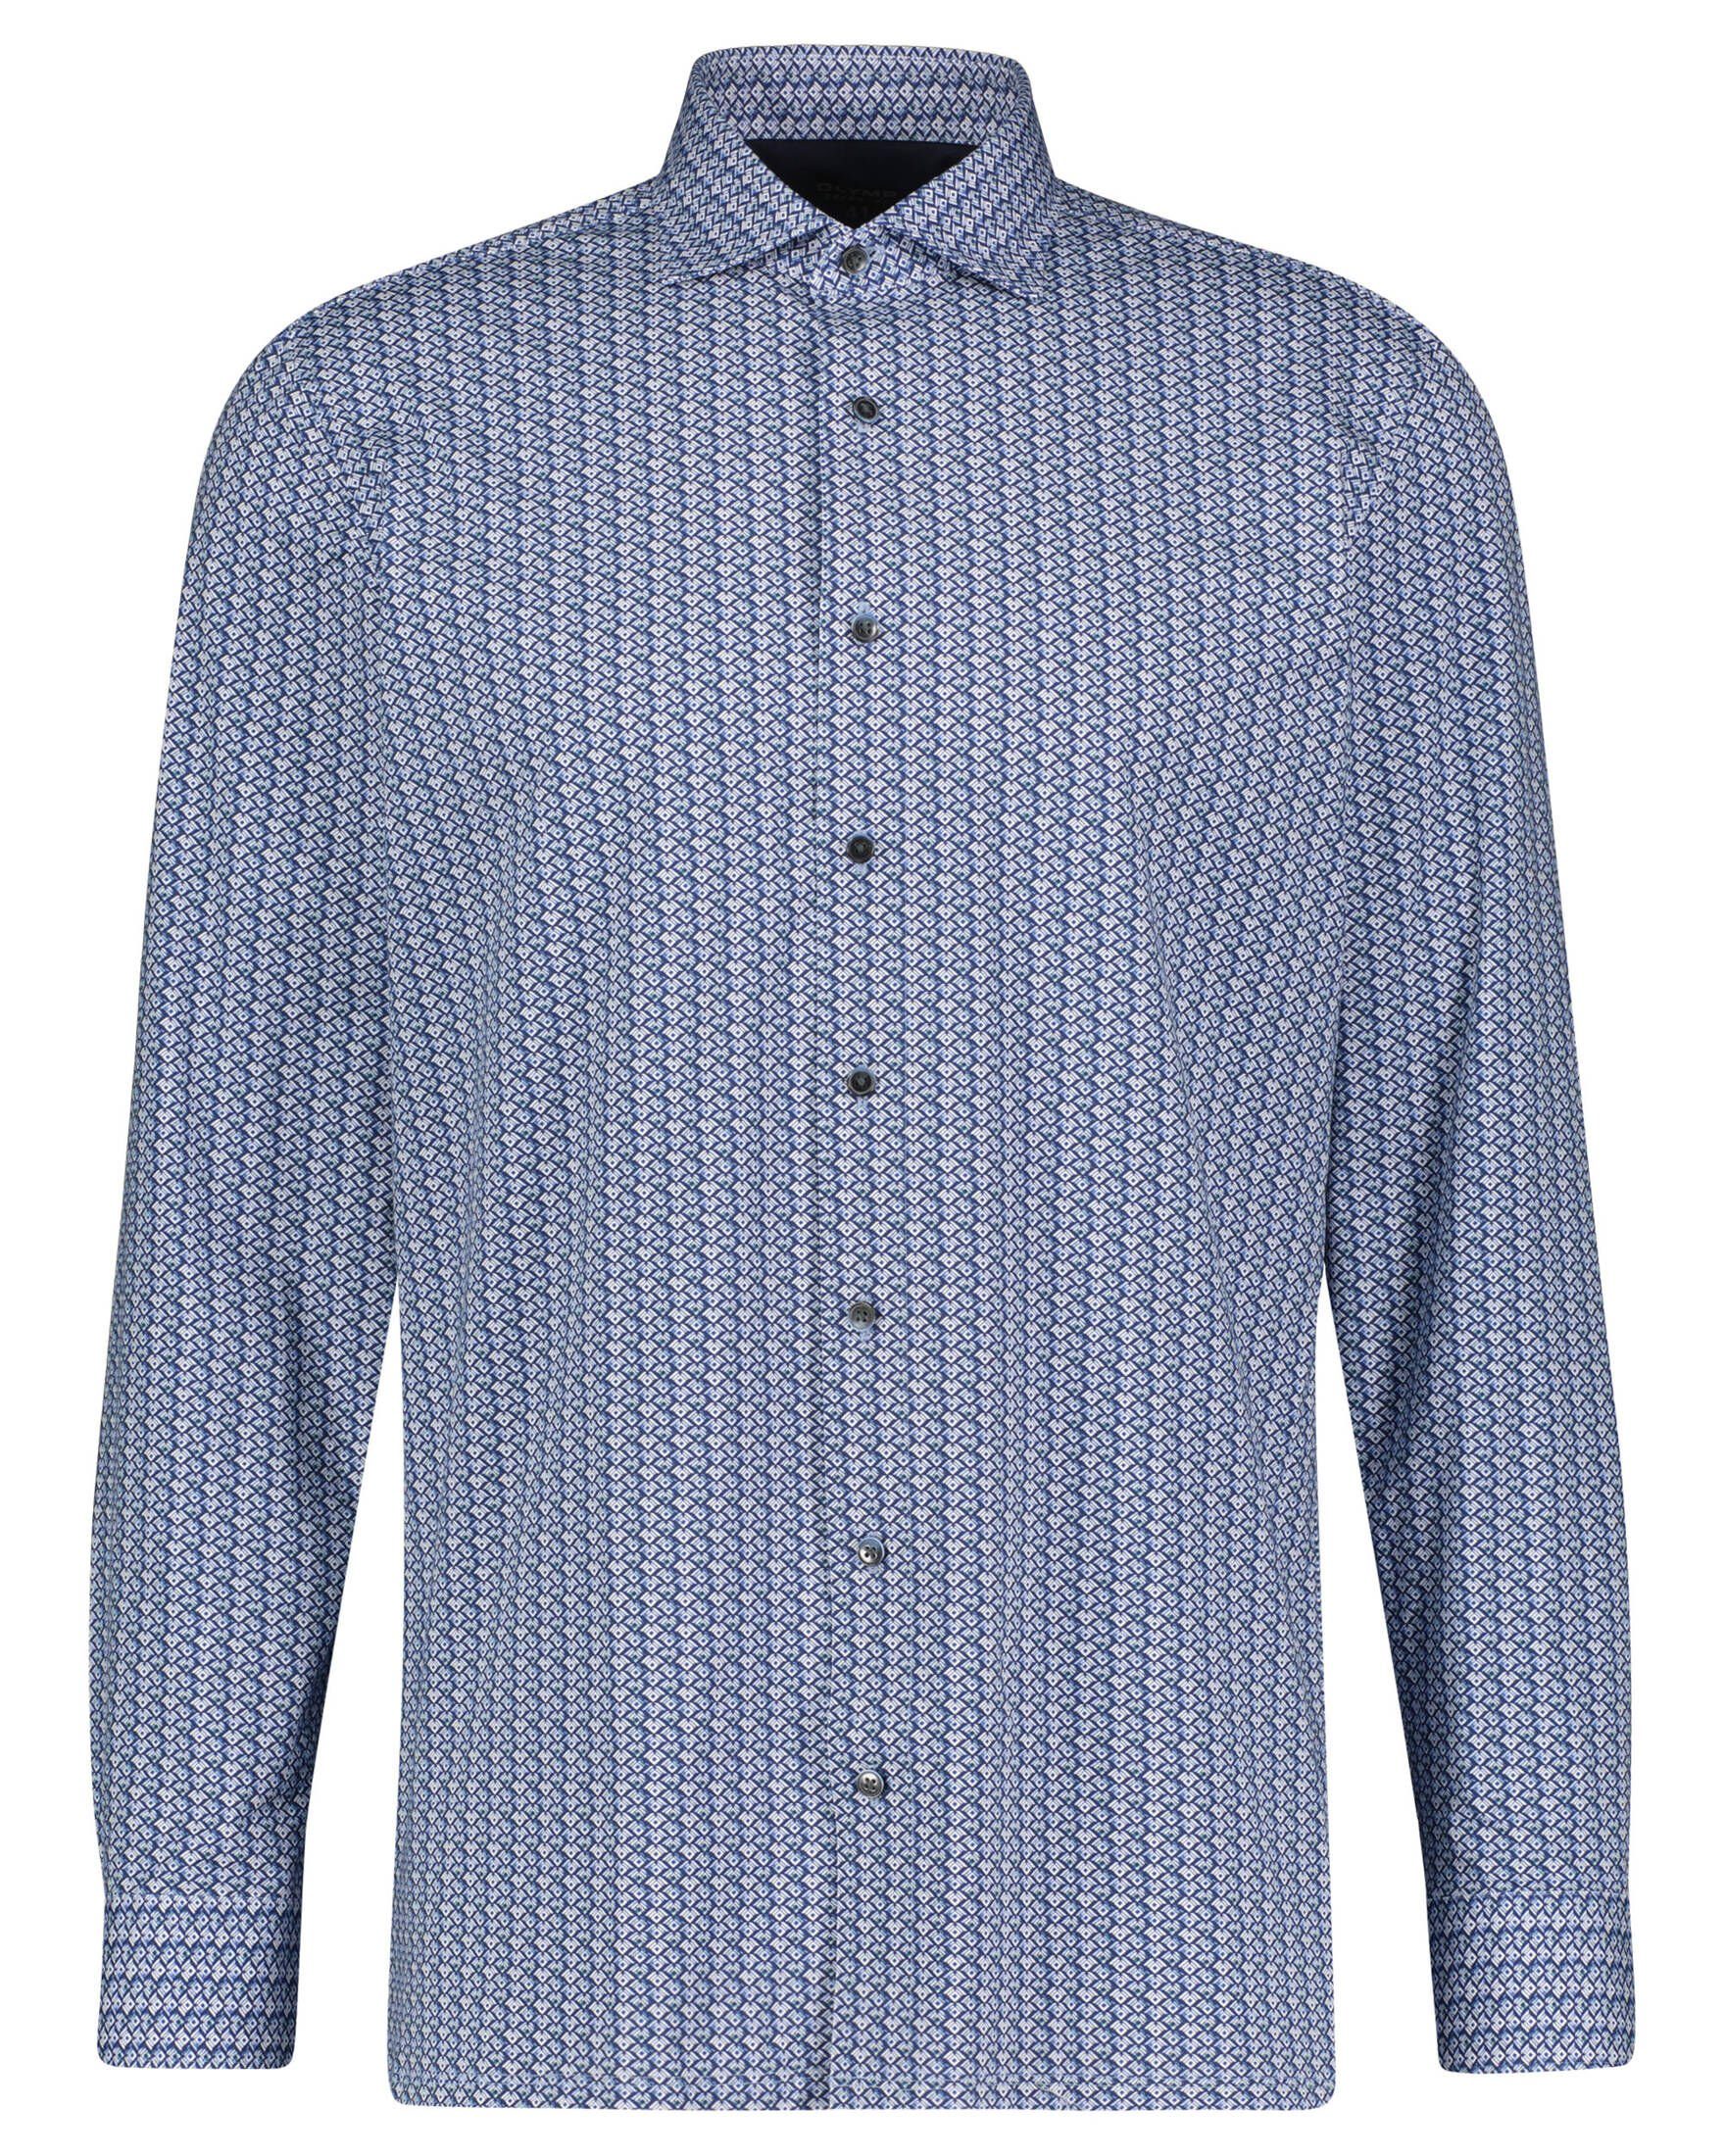 OLYMP Businesshemd »Herren Hemd Modern Fit Langarm« online kaufen | OTTO